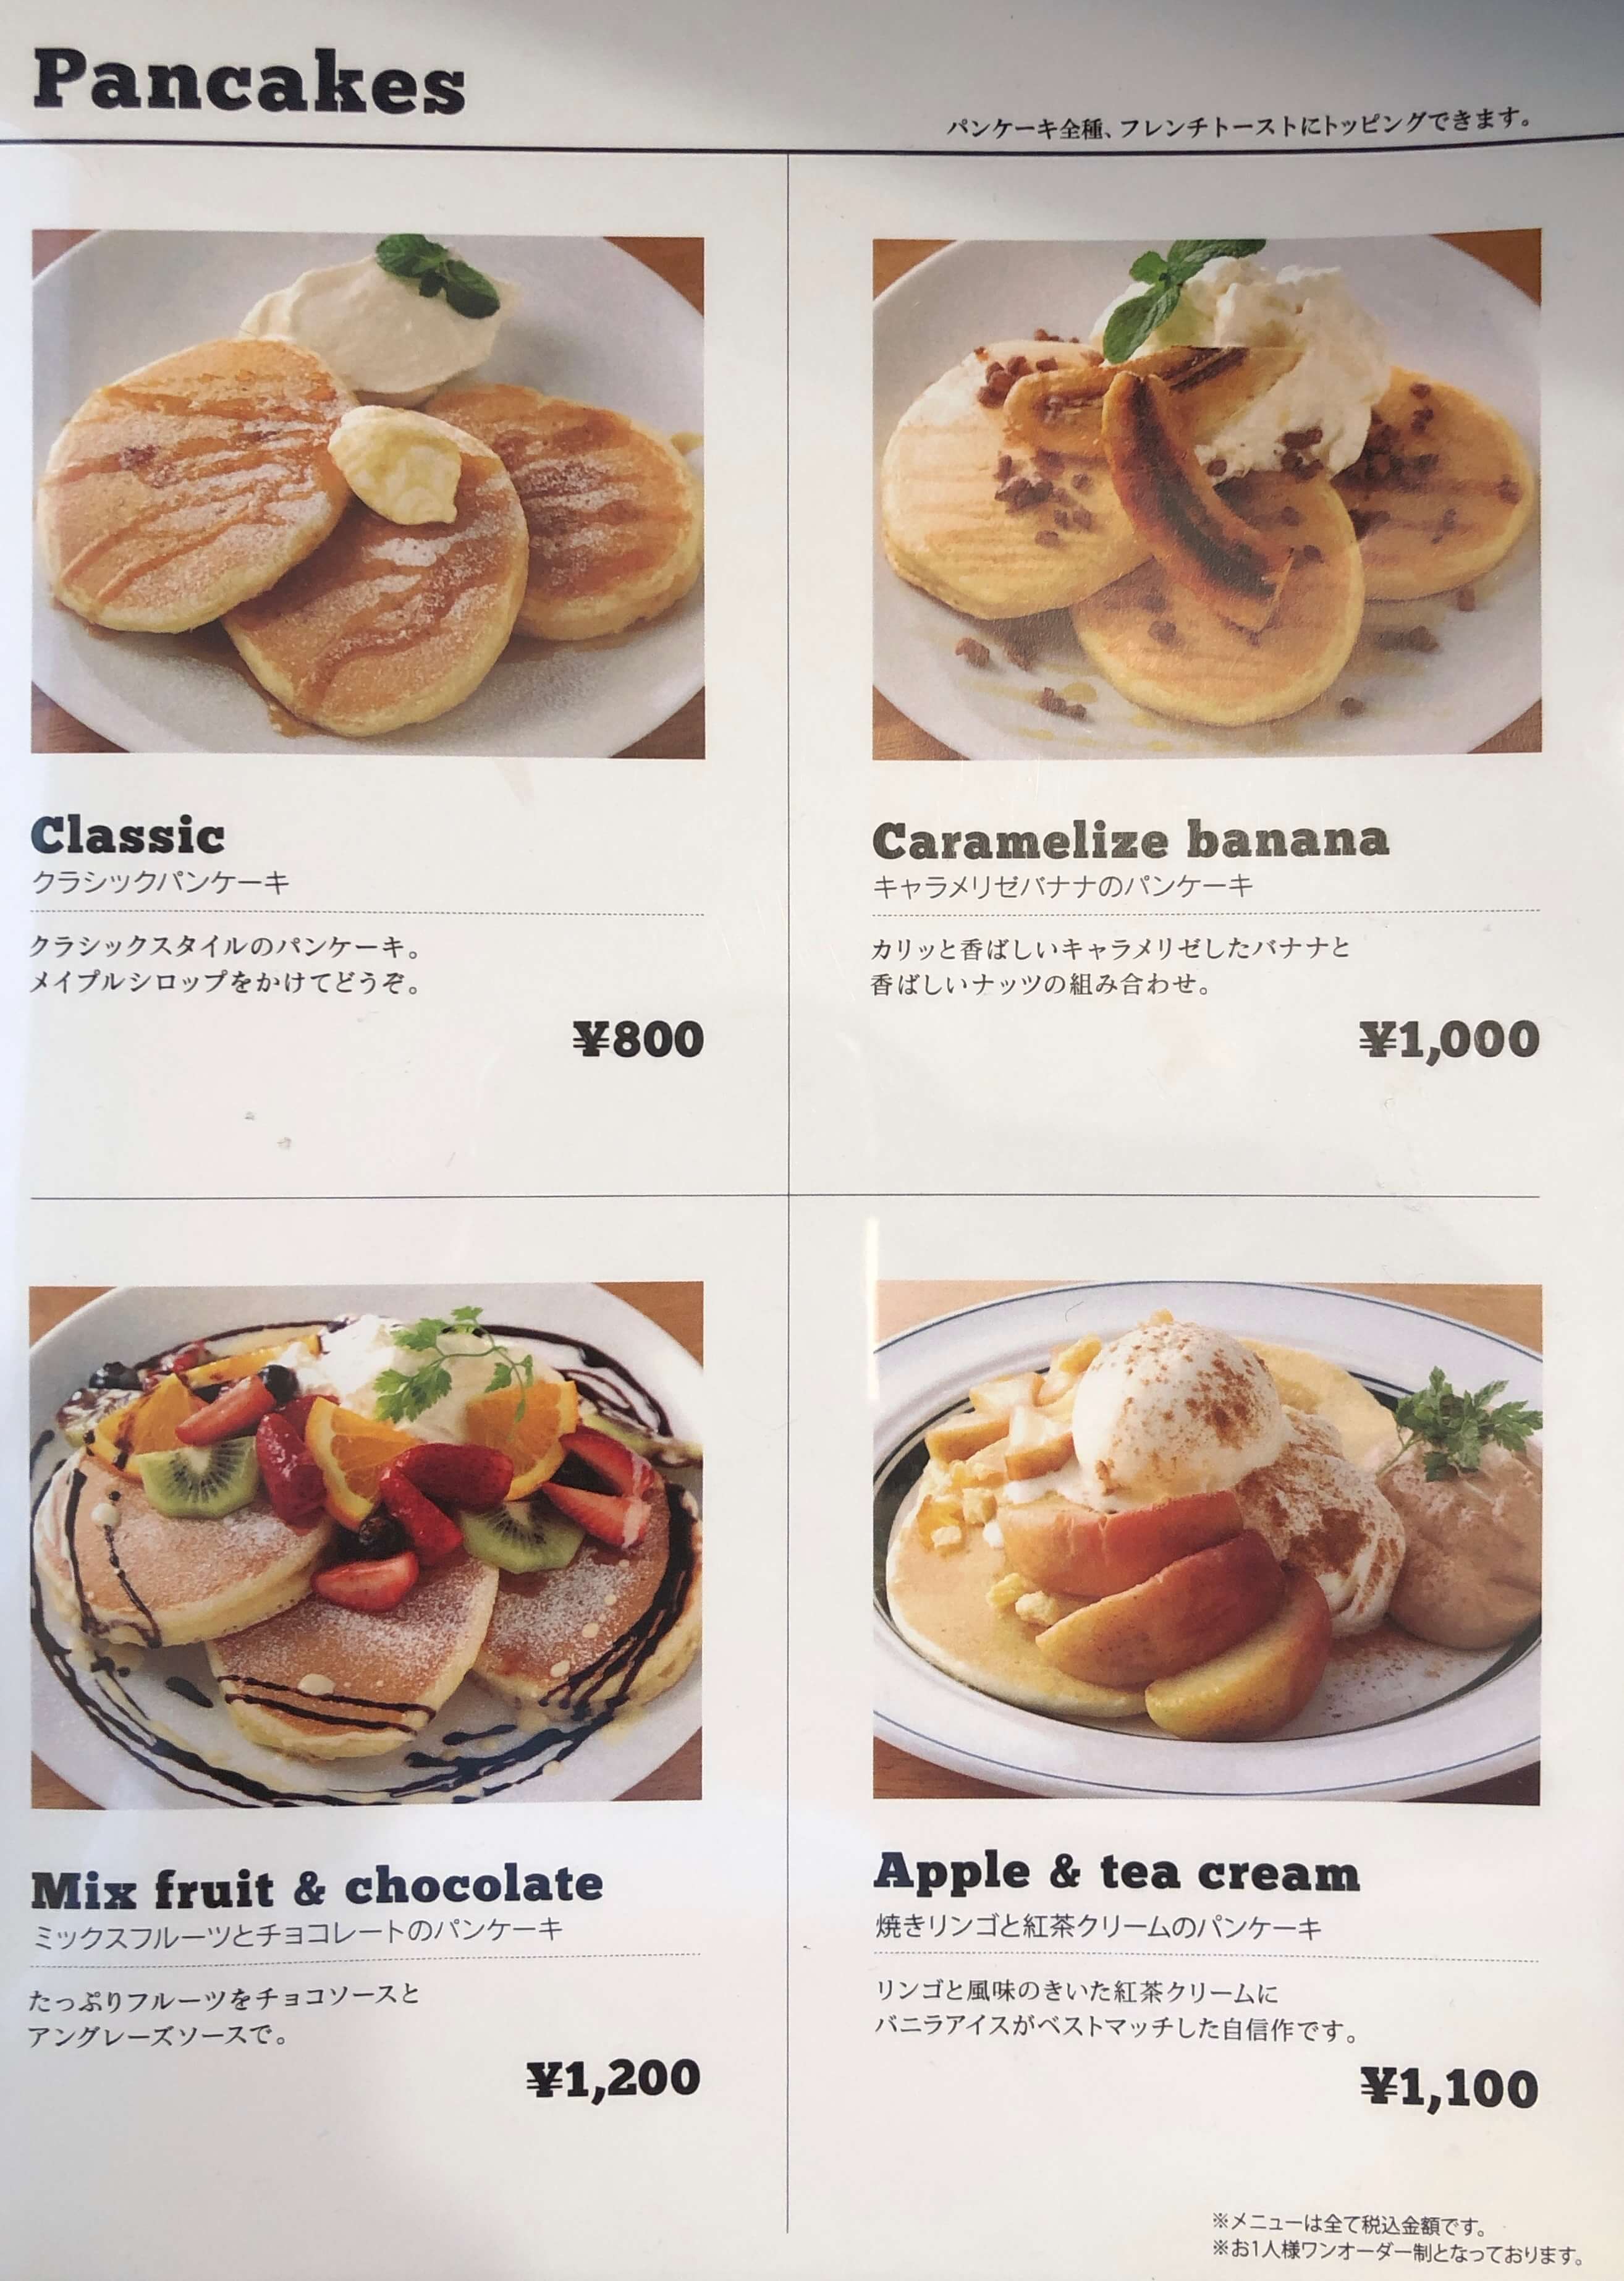 Gramグラム 高岡市 パンケーキ カフェ 本当にふるしゅわ食感 富山のランチ お出かけ 遊びのおすすめ情報 ココなび